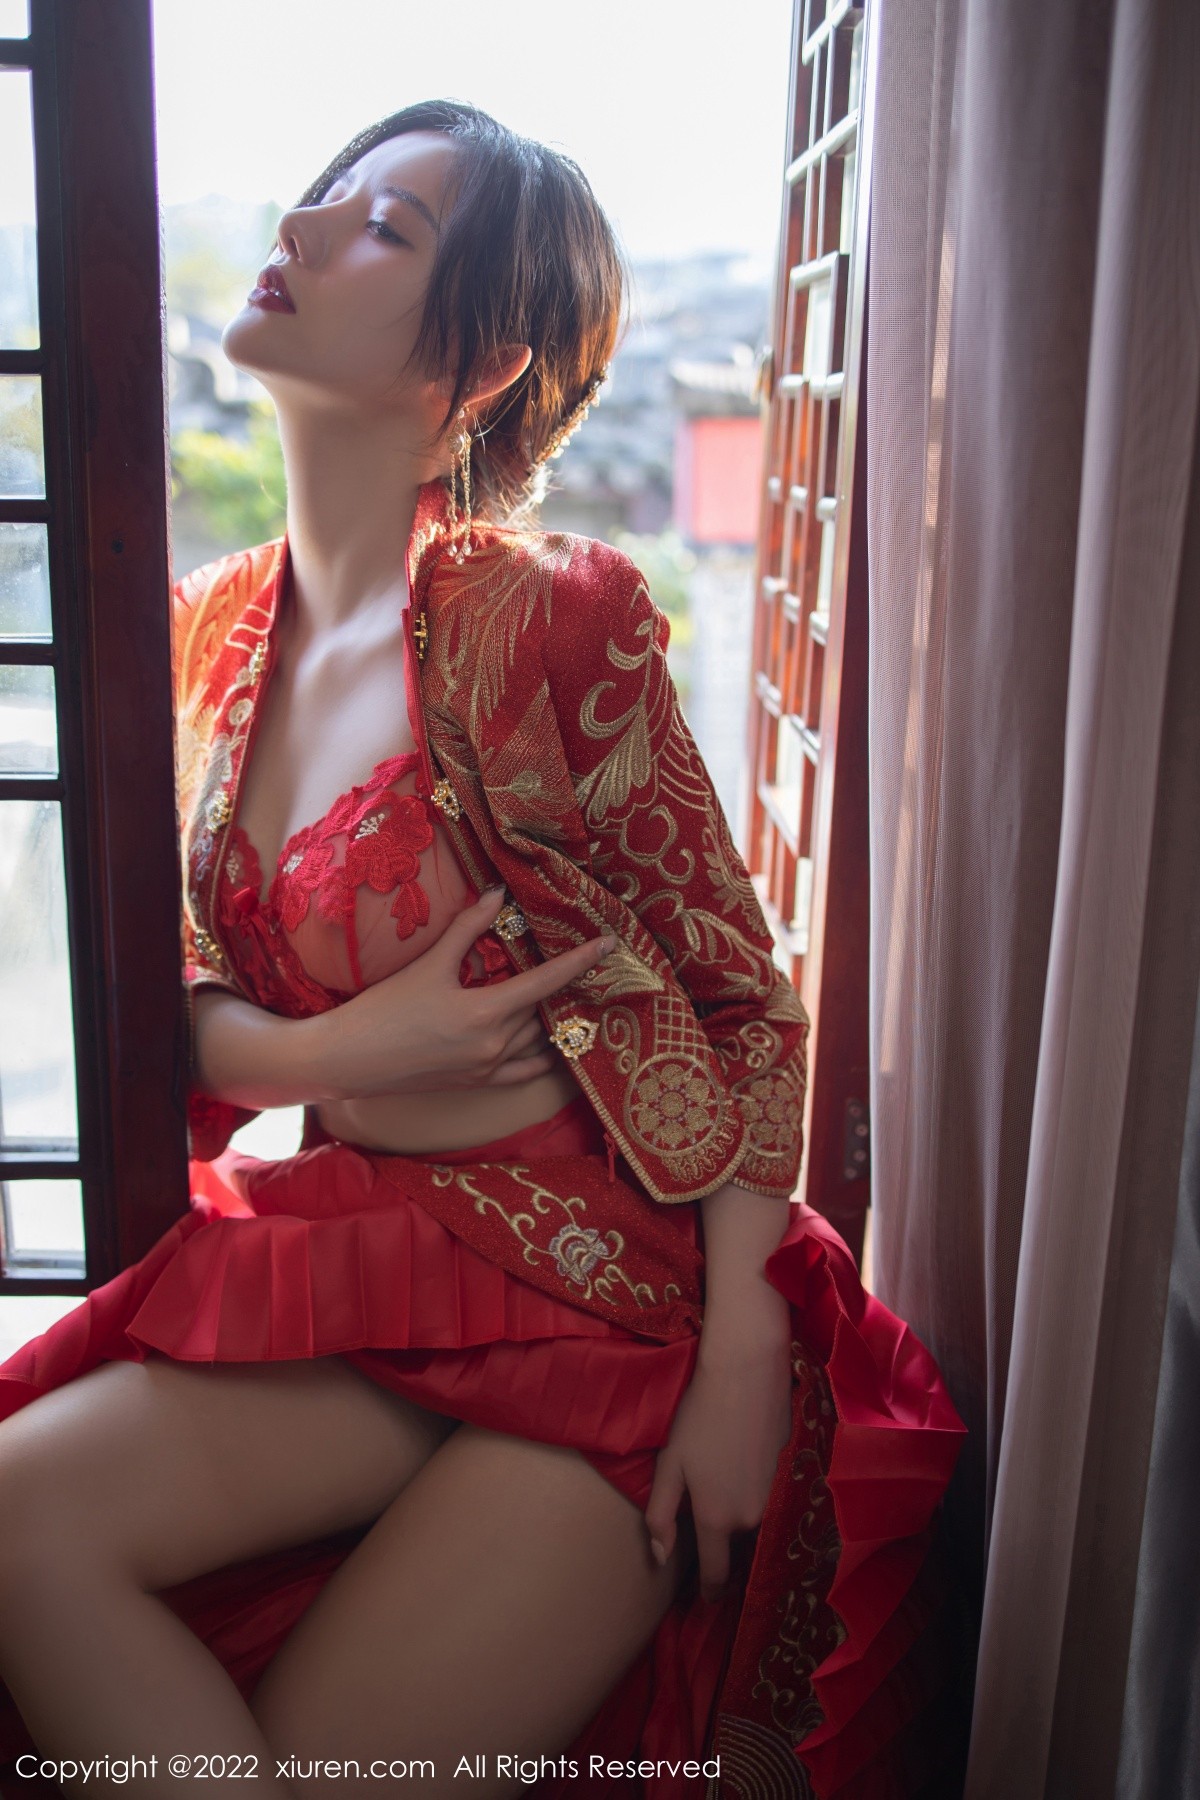 模特就是阿朱啊云南旅拍性感红色喜服露轻透情趣内衣诱惑写真